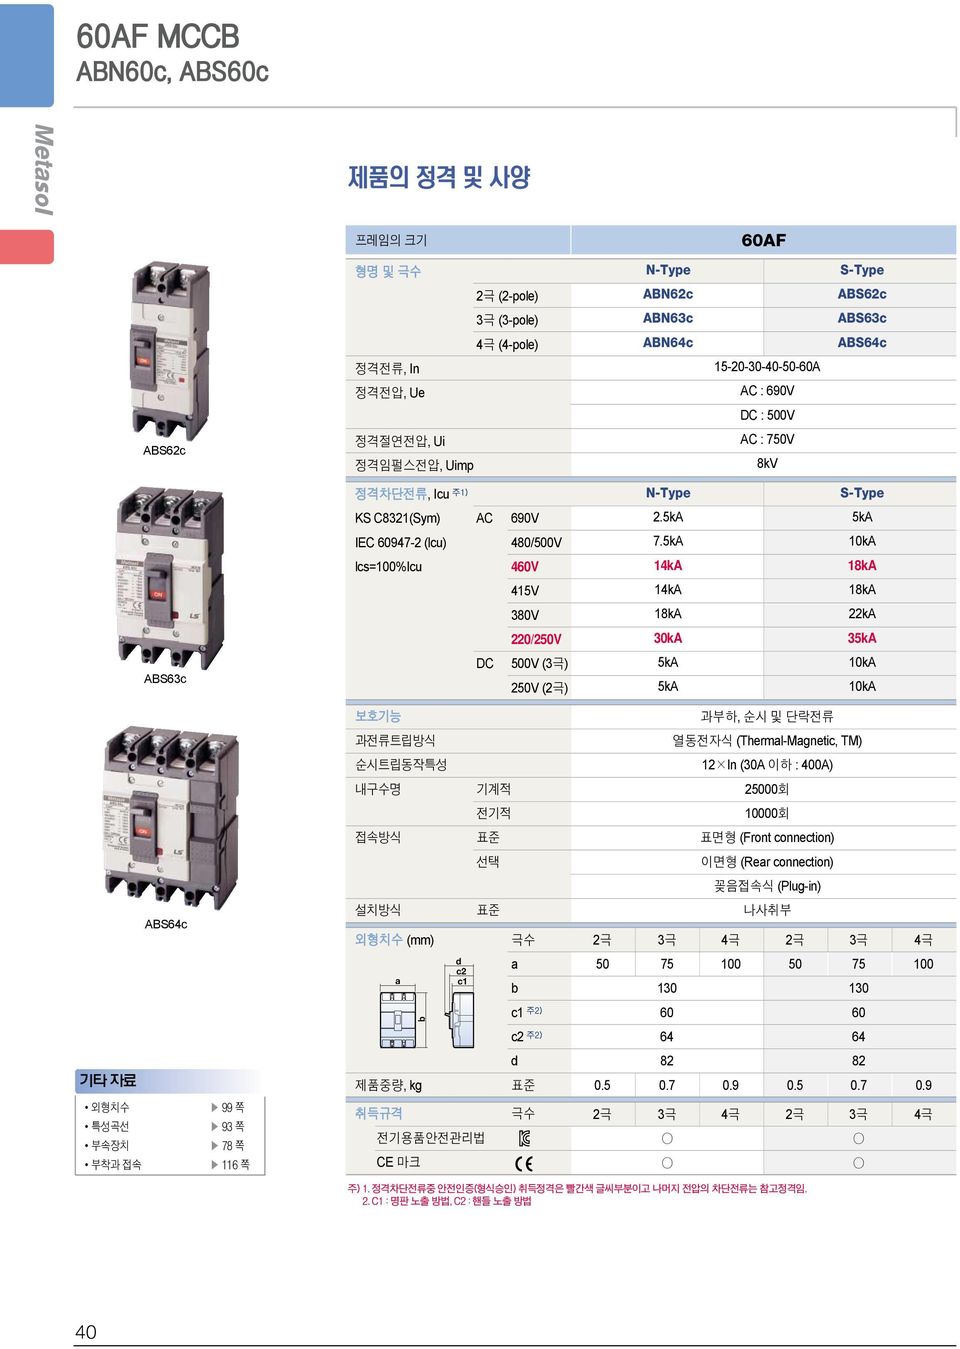 5kA 10kA lcs=100%icu 460V 14kA 18kA 415V 14kA 18kA 380V 18kA 22kA 220/250V 30kA 35kA ABS63c DC 500V () 250V (2극) 5kA 5kA 10kA 10kA 보호기능 과부하, 순시및단락전류 과전류트립방식 열동전자식 (ThermlMgnetic, TM) 순시트립동작특성 12 In